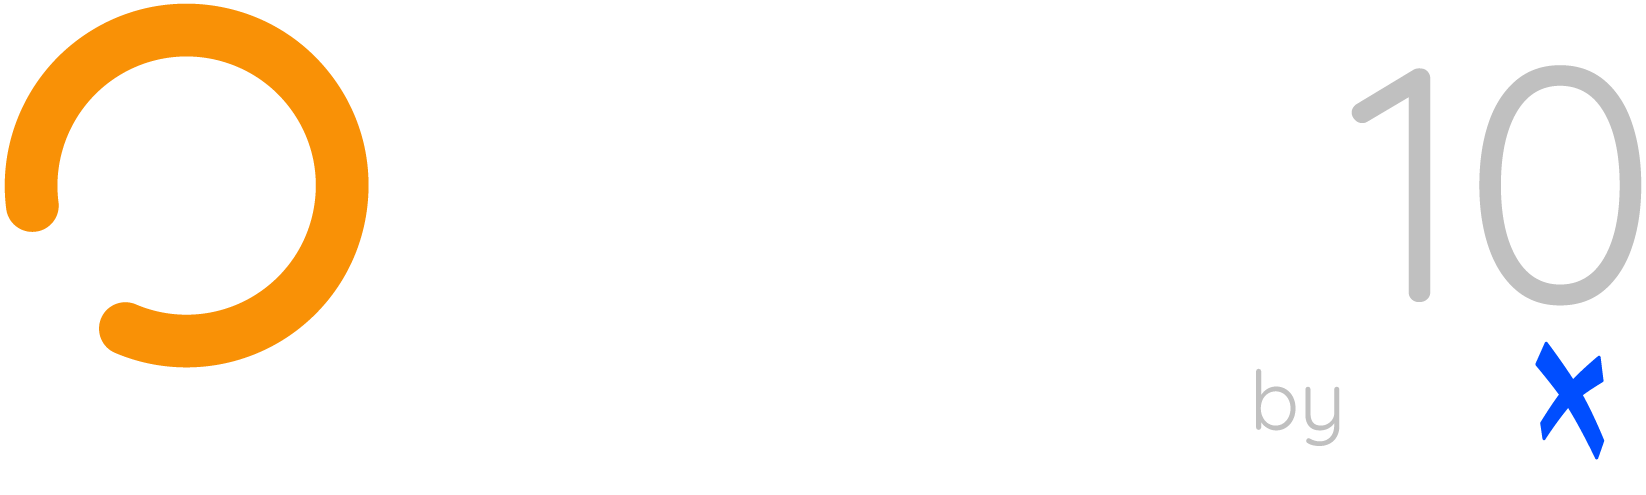 Warp 10